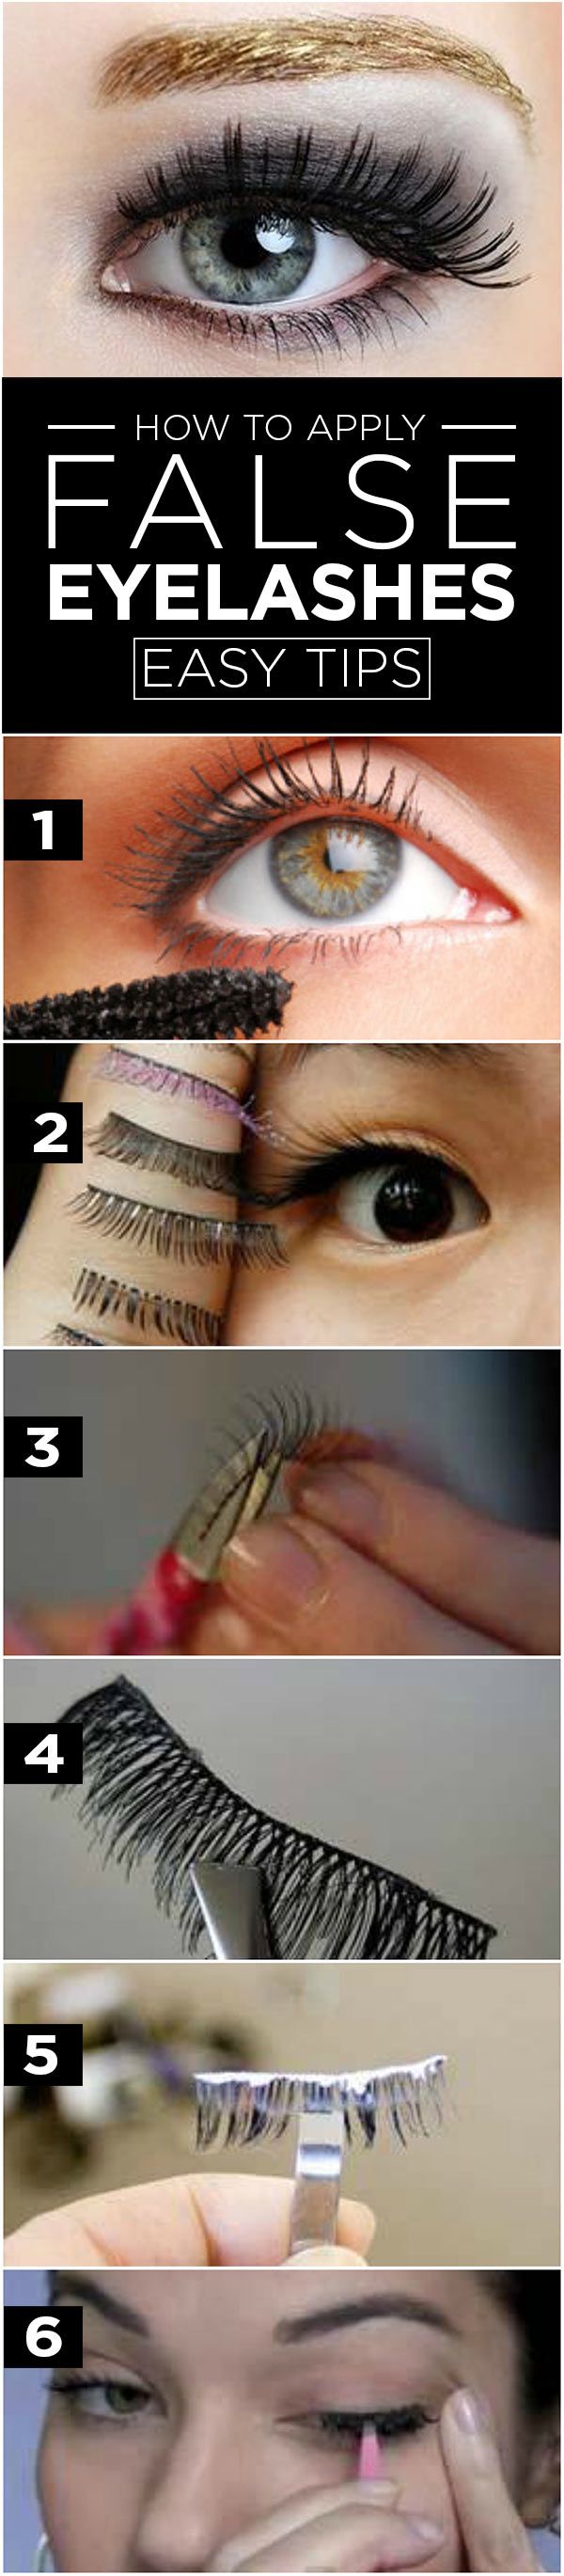 how to apply false eyelashes tutorial